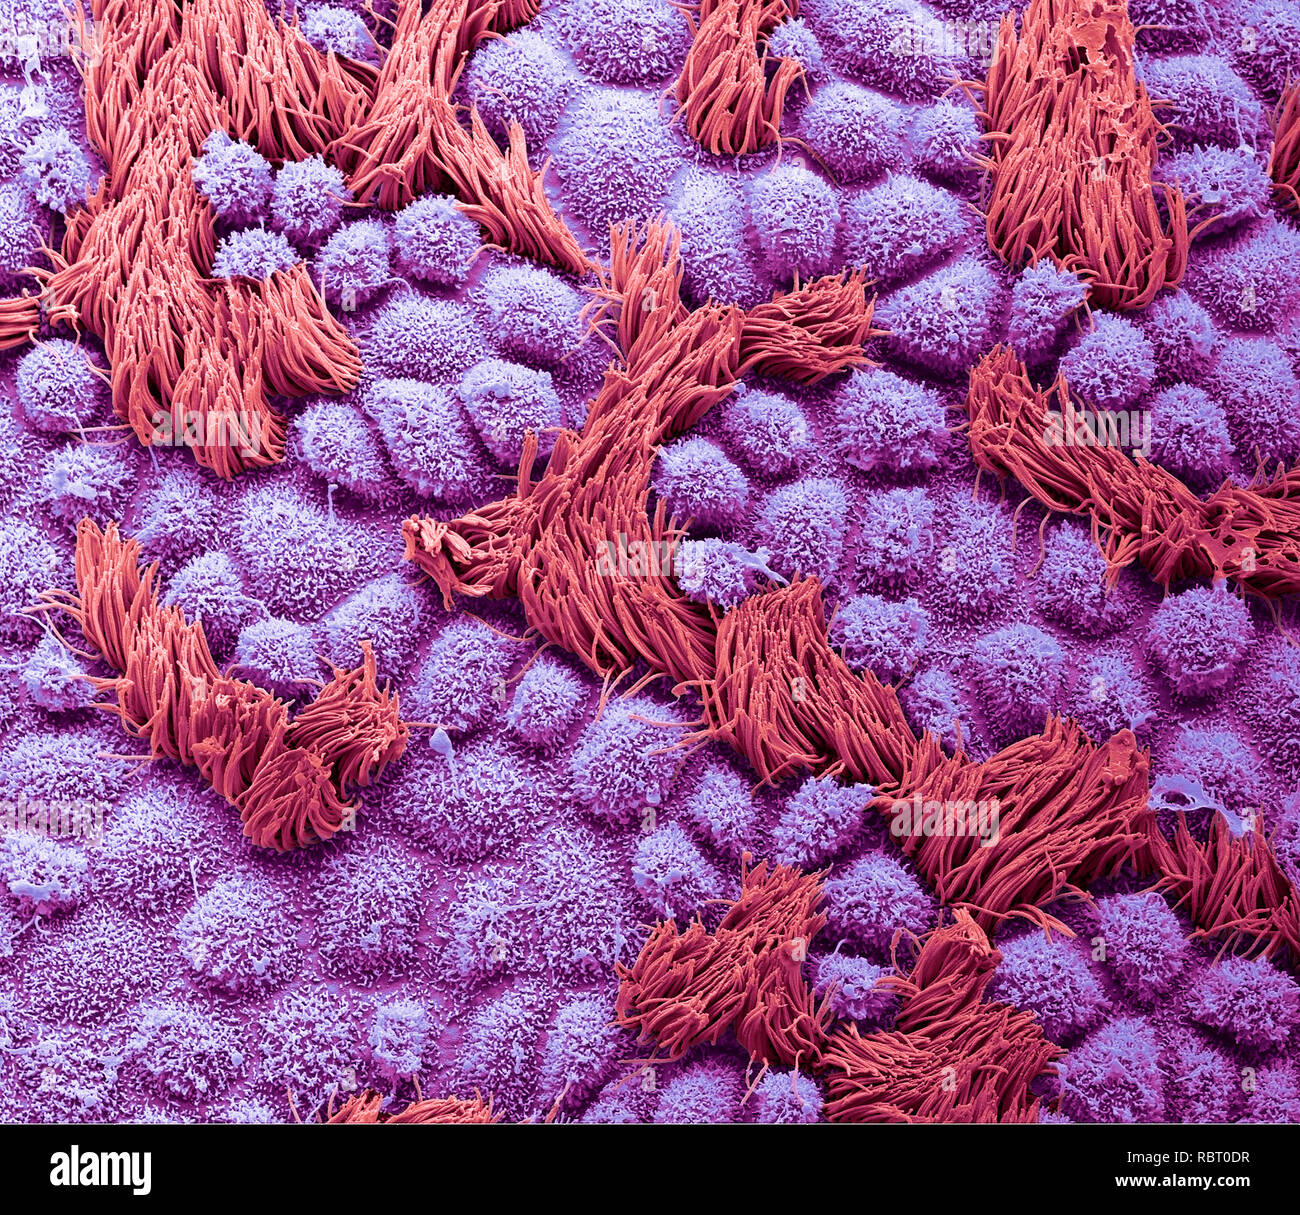 Tubo di Falloppio. Color scanning electron microfotografia (SEM) della superficie di un essere umano della tuba di Falloppio. Le tube di Falloppio sono condotti che portano da ovaie in utero. L'epitelio è costituito da cellule colonnari, molti dei quali hanno ciglia (rosso). Il battito delle ciglia è verso l'utero, favorendo il trasporto delle uova da ovaie. Di colore blu sono le cellule di secrezione con loro microvilli proiezioni. Queste cellule secernono una sostanza che mantiene un ambiente umido nel tubo e possono fornire elementi nutritivi per l'uovo. Ingrandimento: x2000 quando stampata a 10 cm di larghezza. Foto Stock